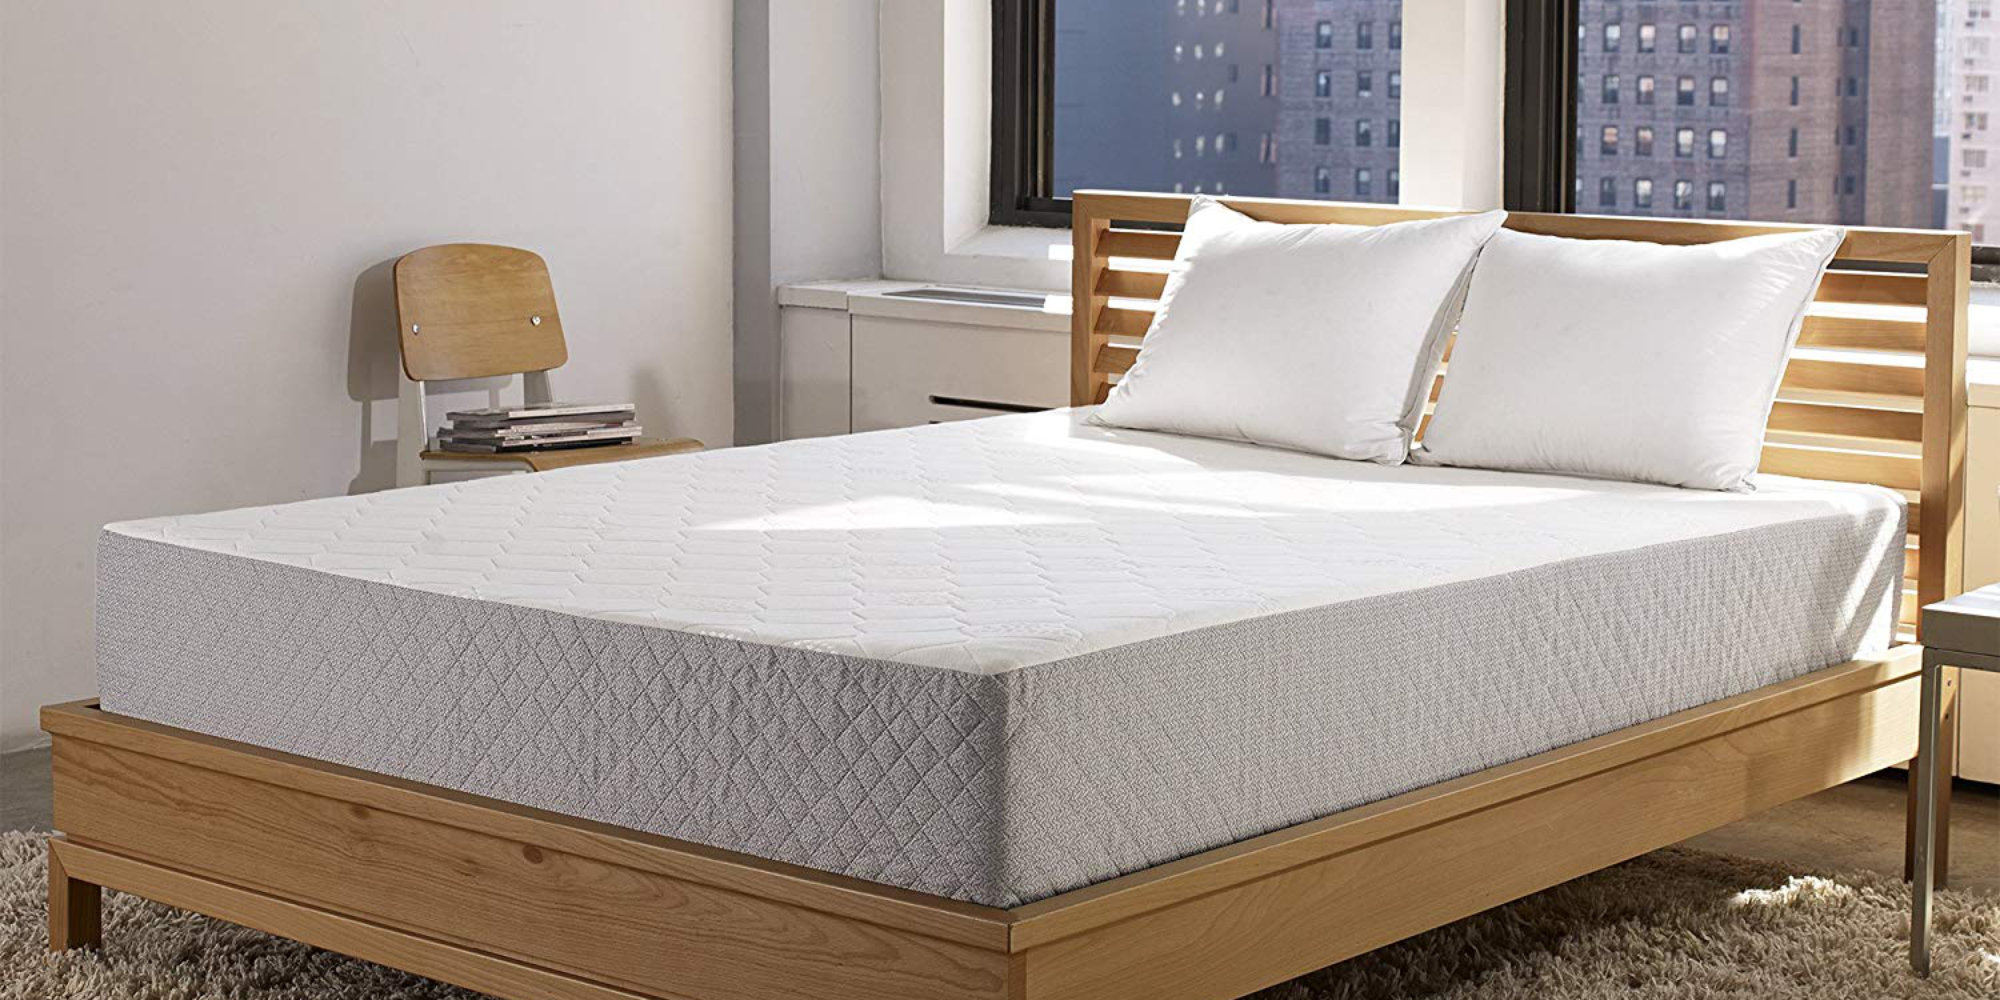 marley 10-inch gel memory foam mattress review